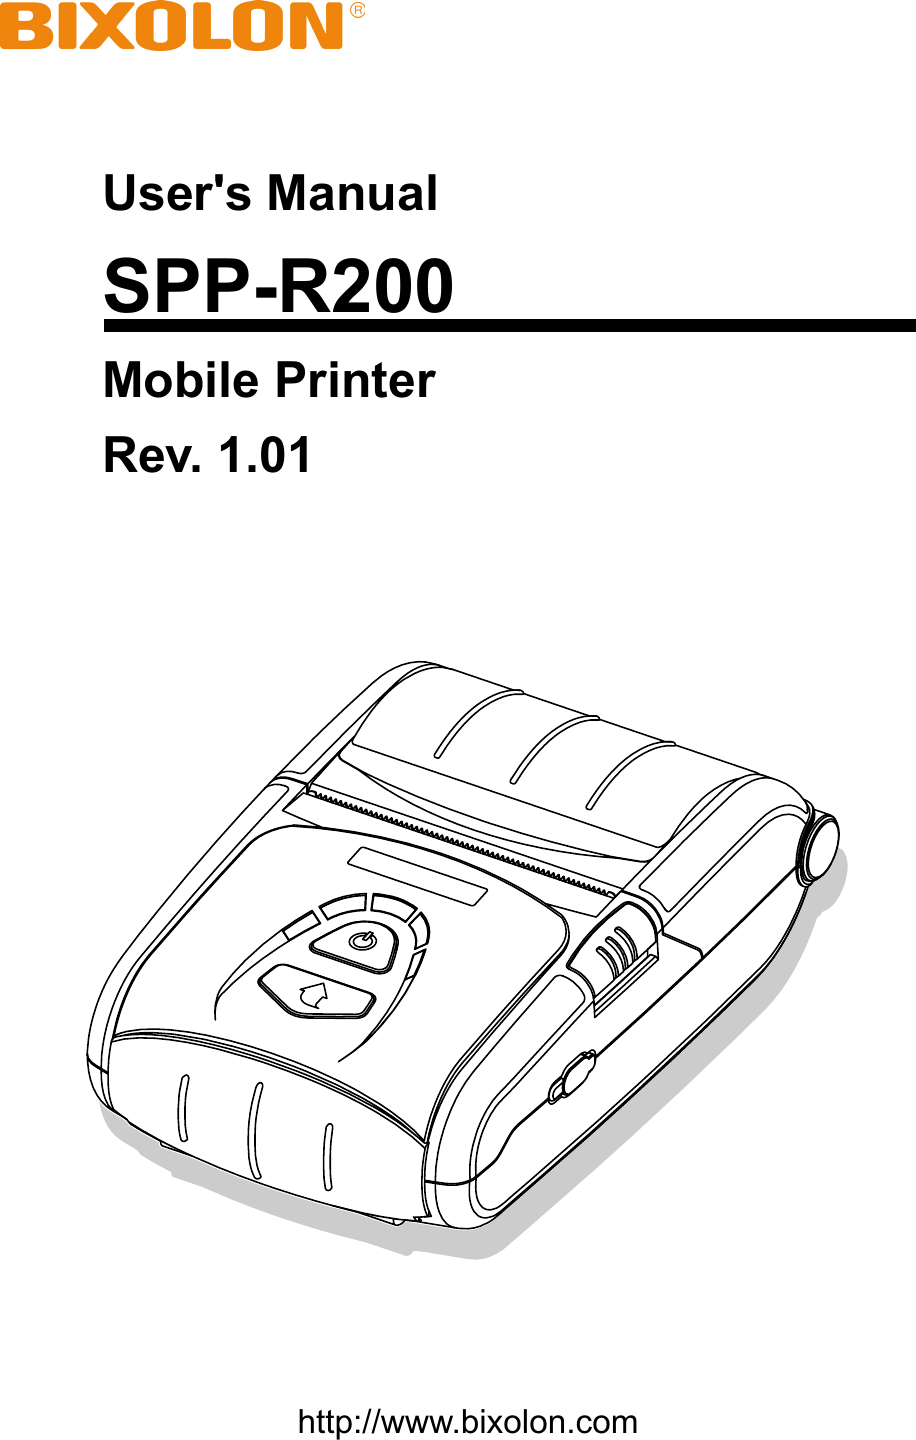    User&apos;s Manual SPP-R200 Mobile Printer Rev. 1.01      http://www.bixolon.com 